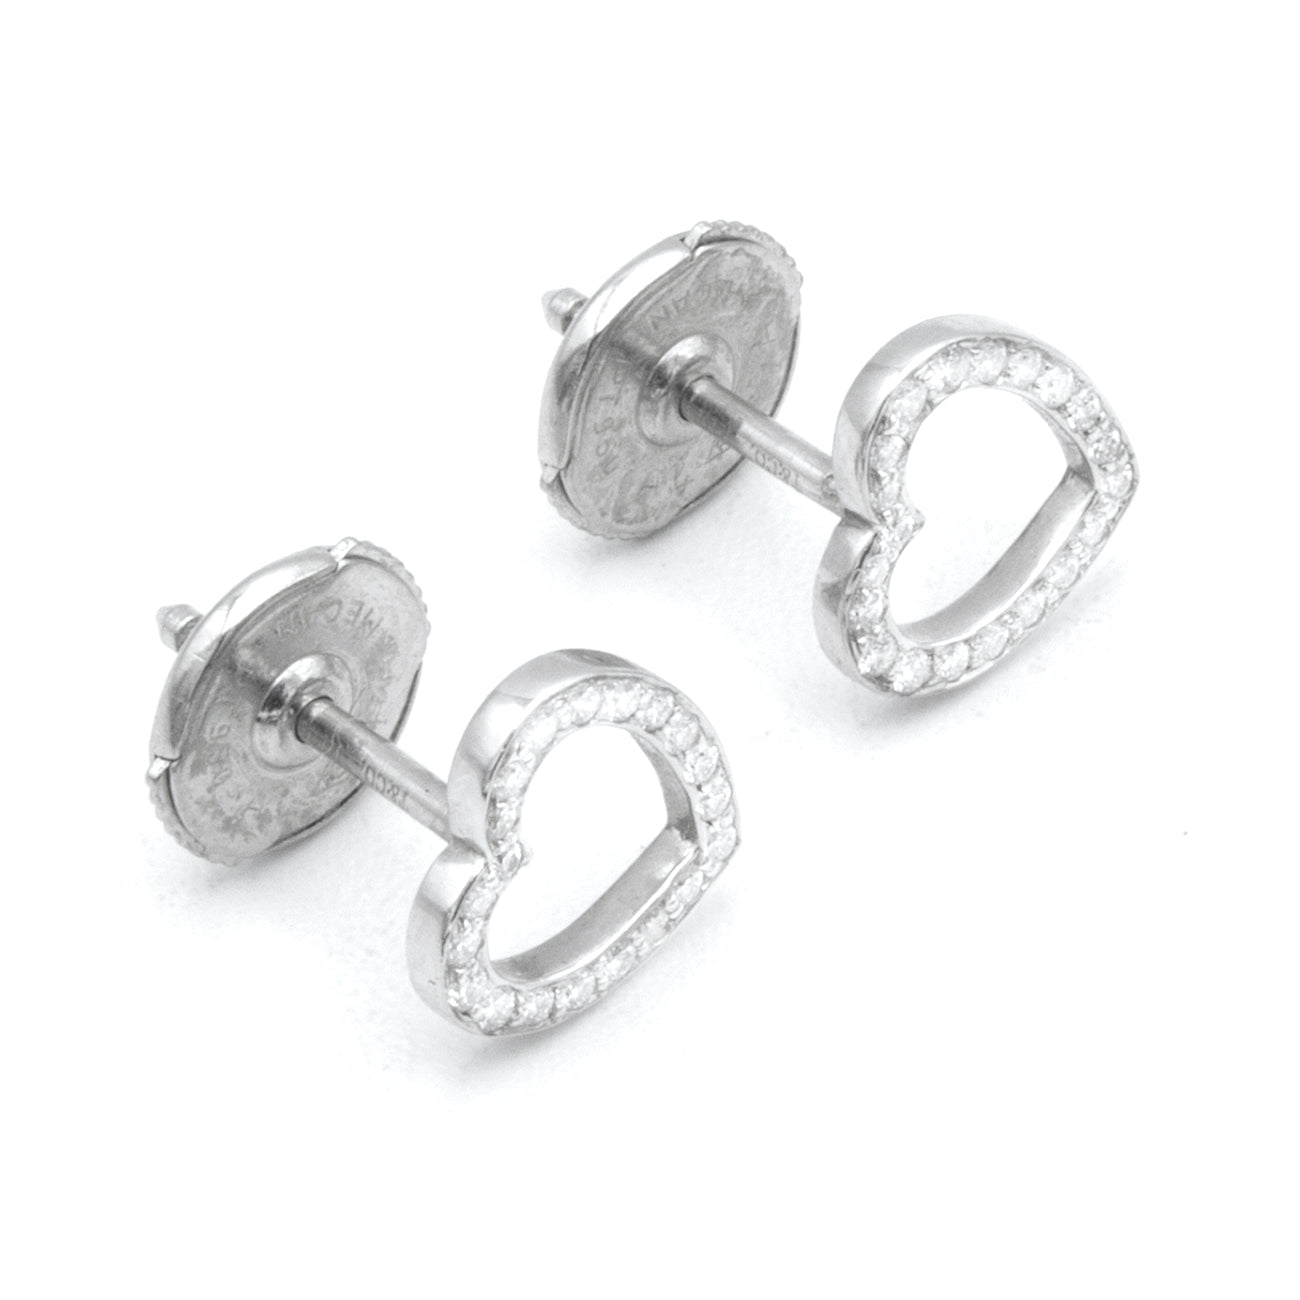 Tiffany & Co Metro earrings